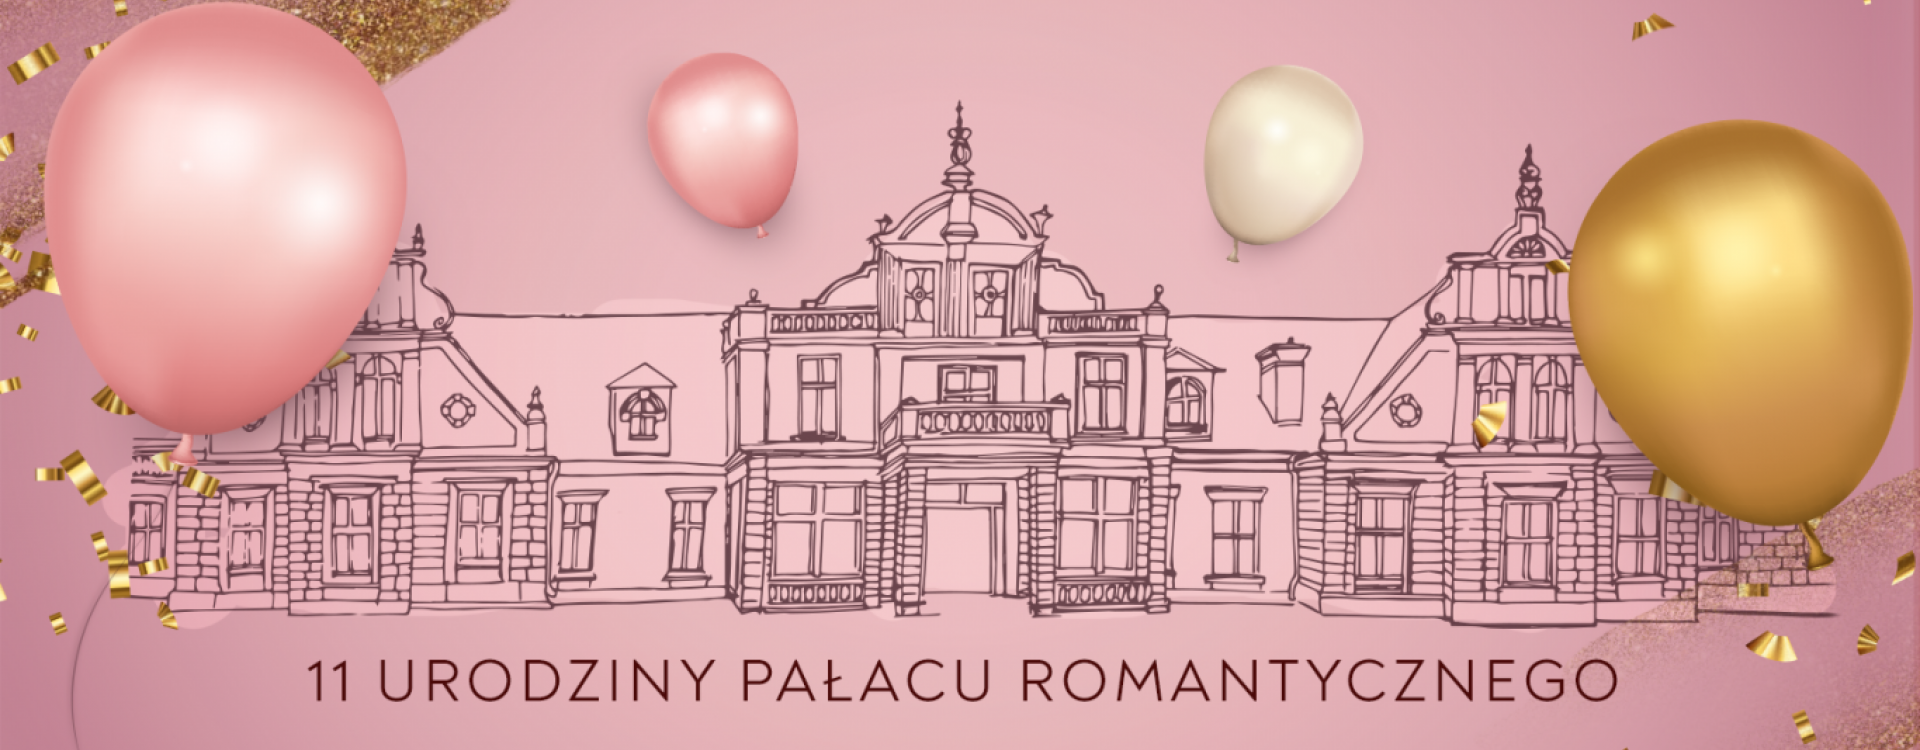 11 urodziny Pałacu Romantycznego!